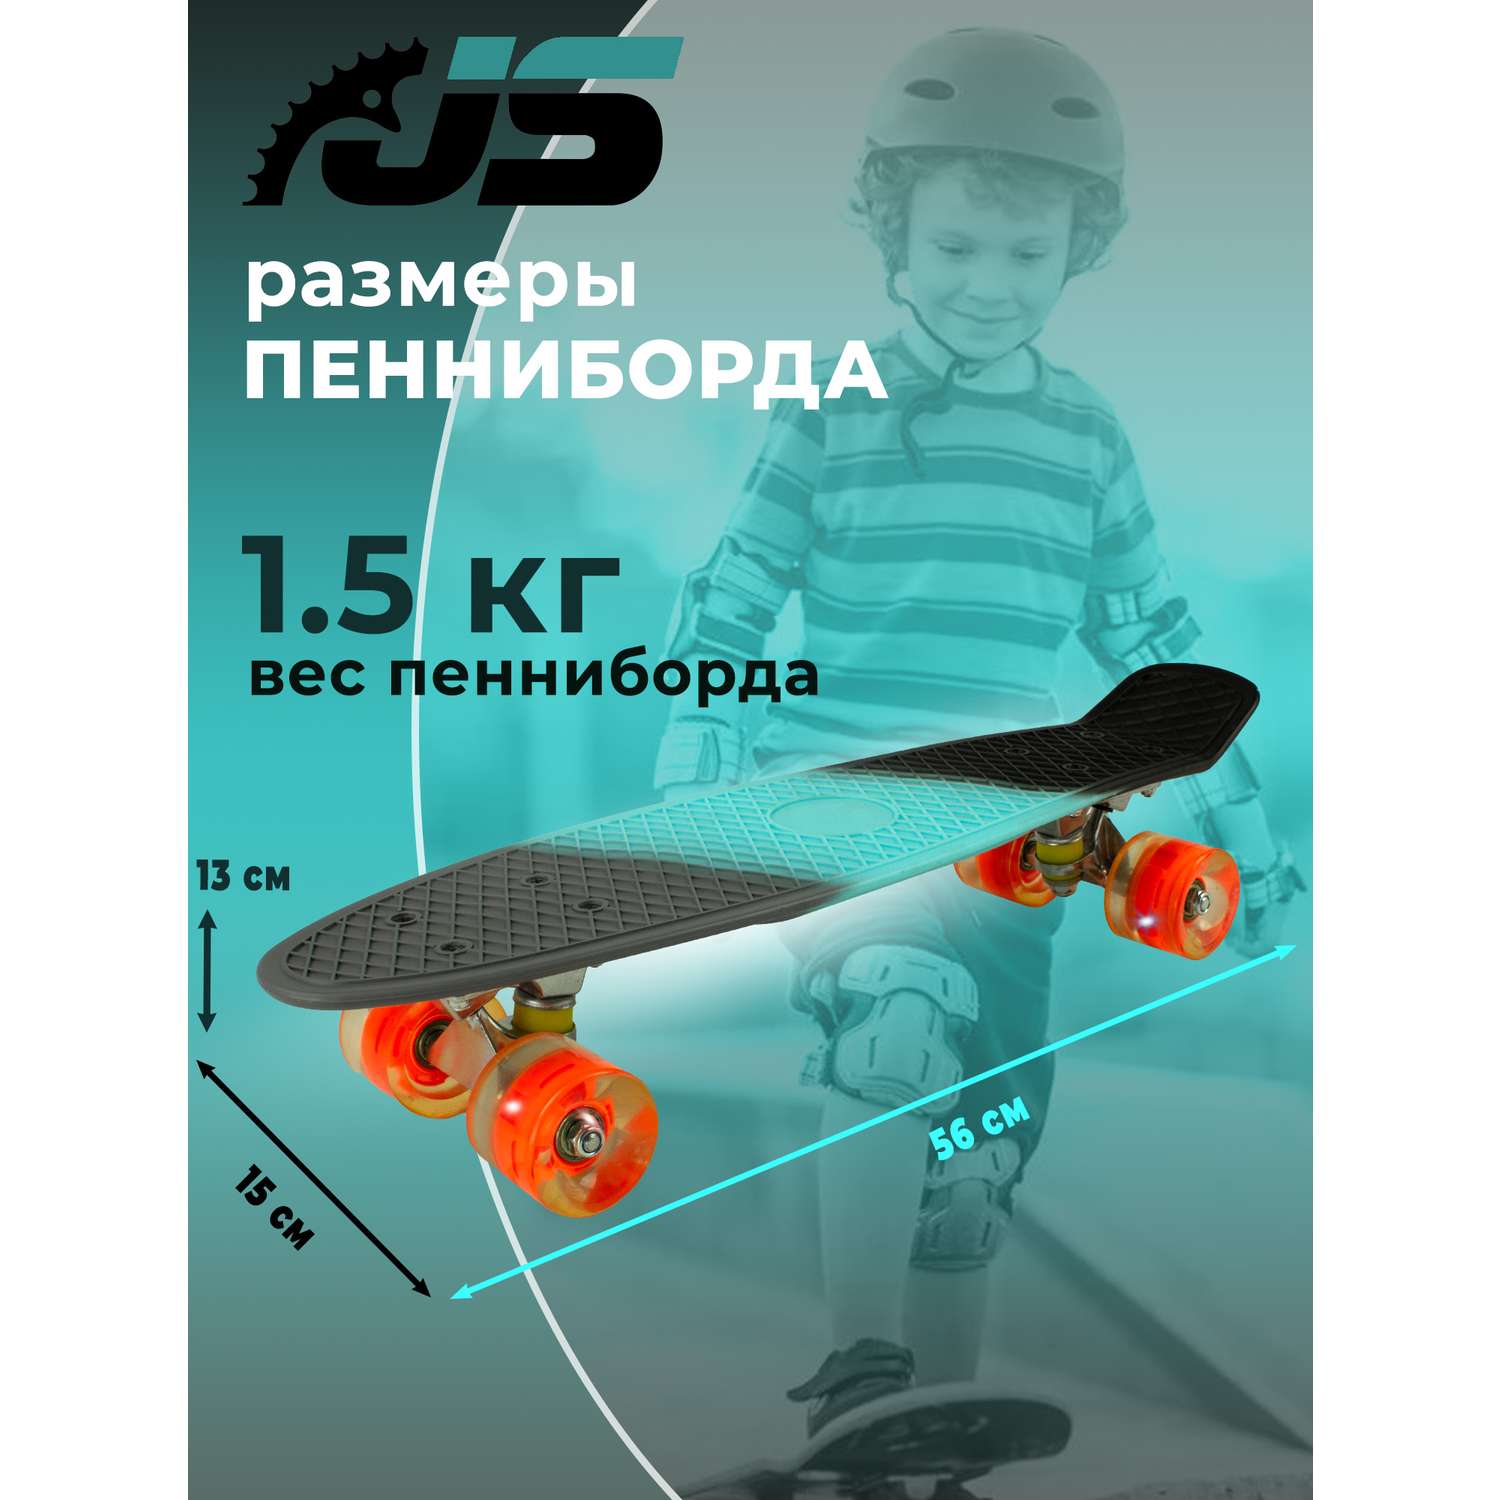 Скейтборд JETSET детский серый голубой черный - фото 2